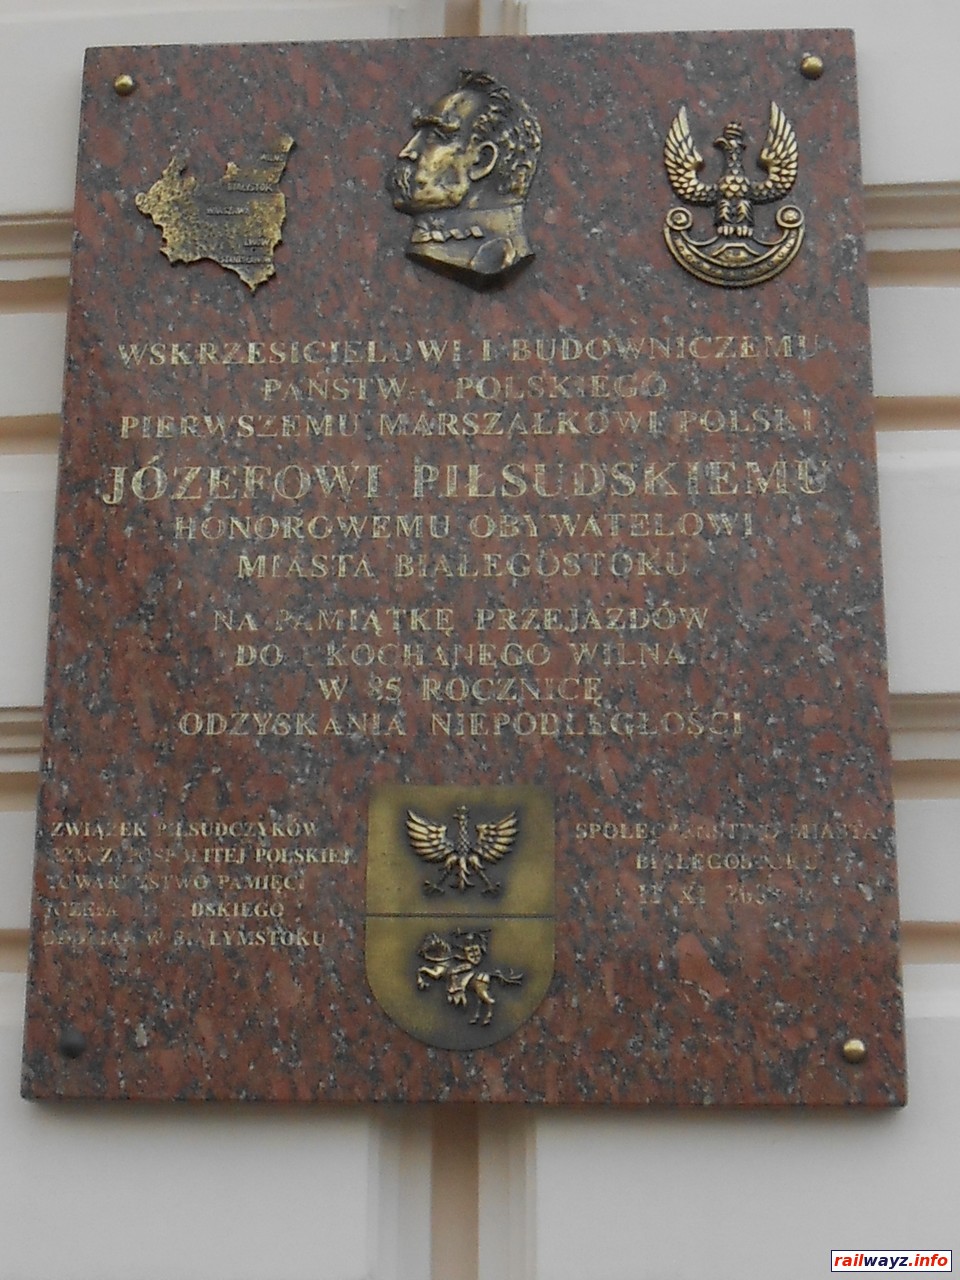 Памятная доска в честь Юзефа Пилсудскго, ст. Белосток